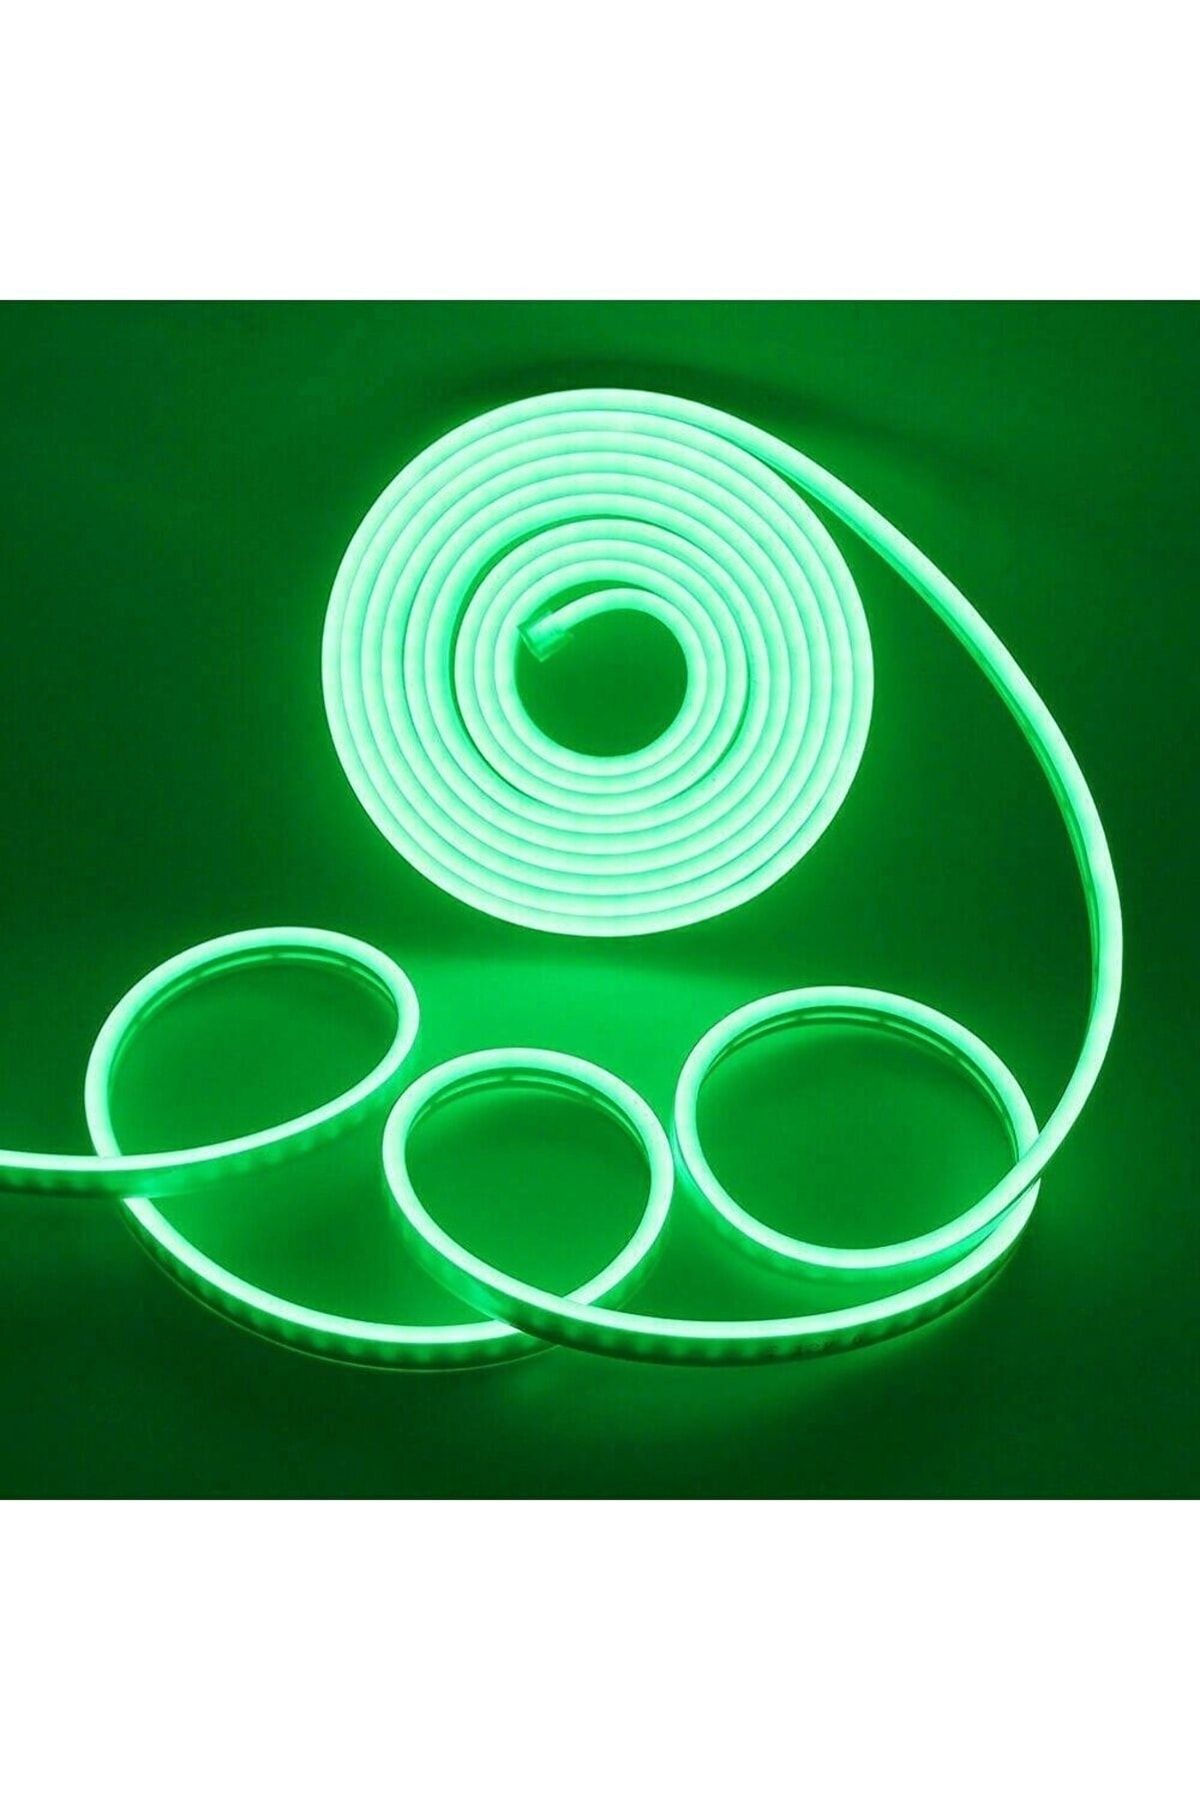 HYL 12 Volt Yeşil Neon Led Işık | Neon Şerit Led Esnek Silikonlu Aydınlatma 1 Metre Tak Çalıştır